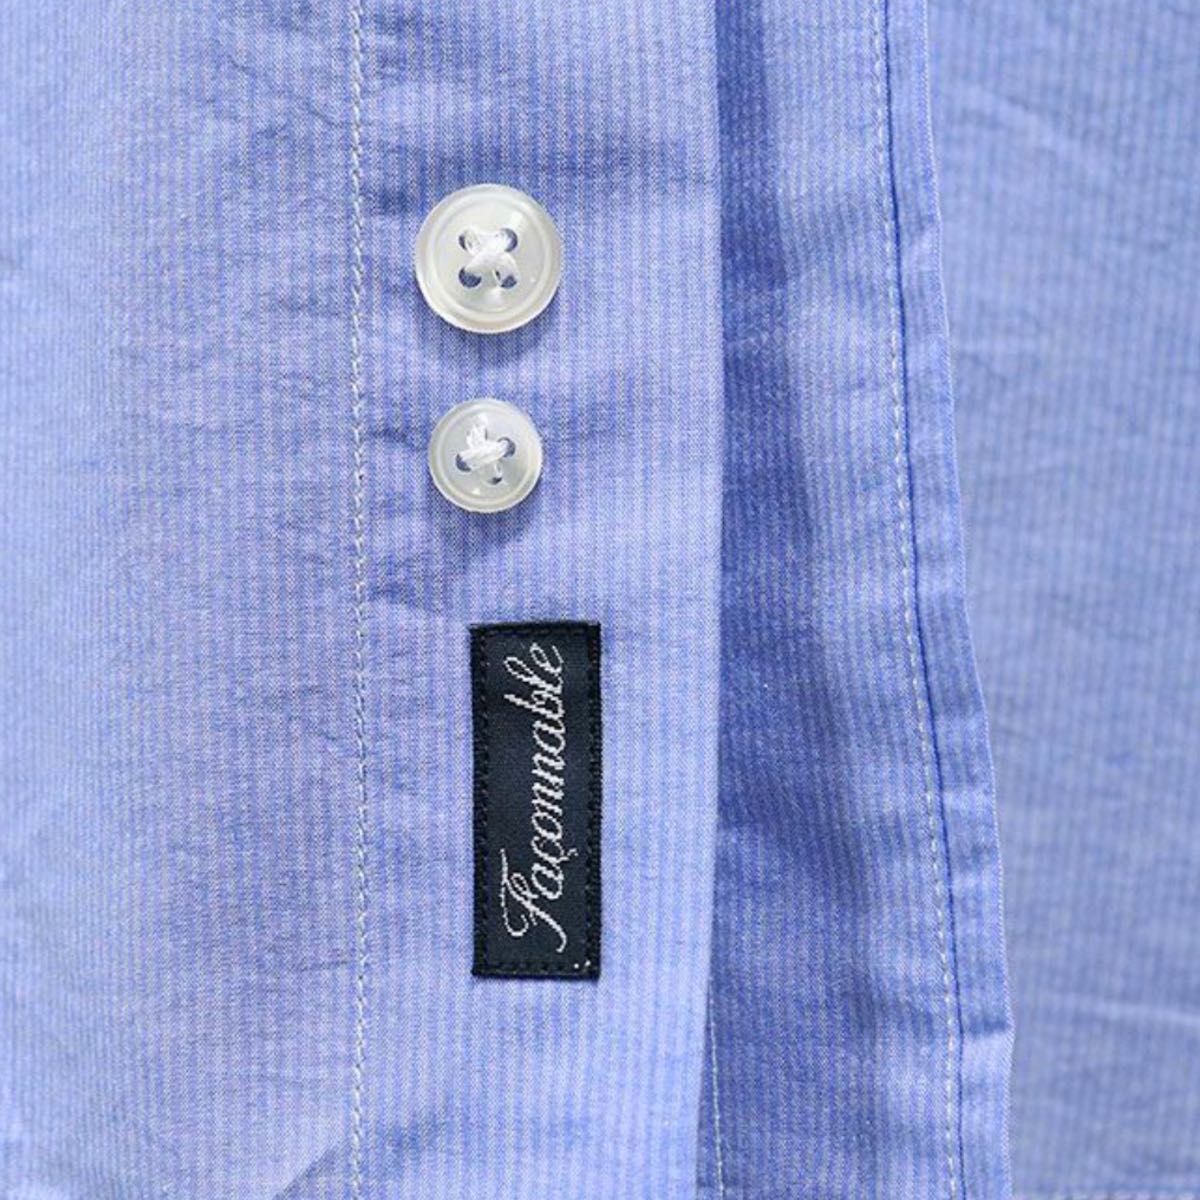 【新品タグ付】フランス発ブランド Faconnable シャツ コットン ホリゾンタルカラー ストライプ ブルー XLサイズ